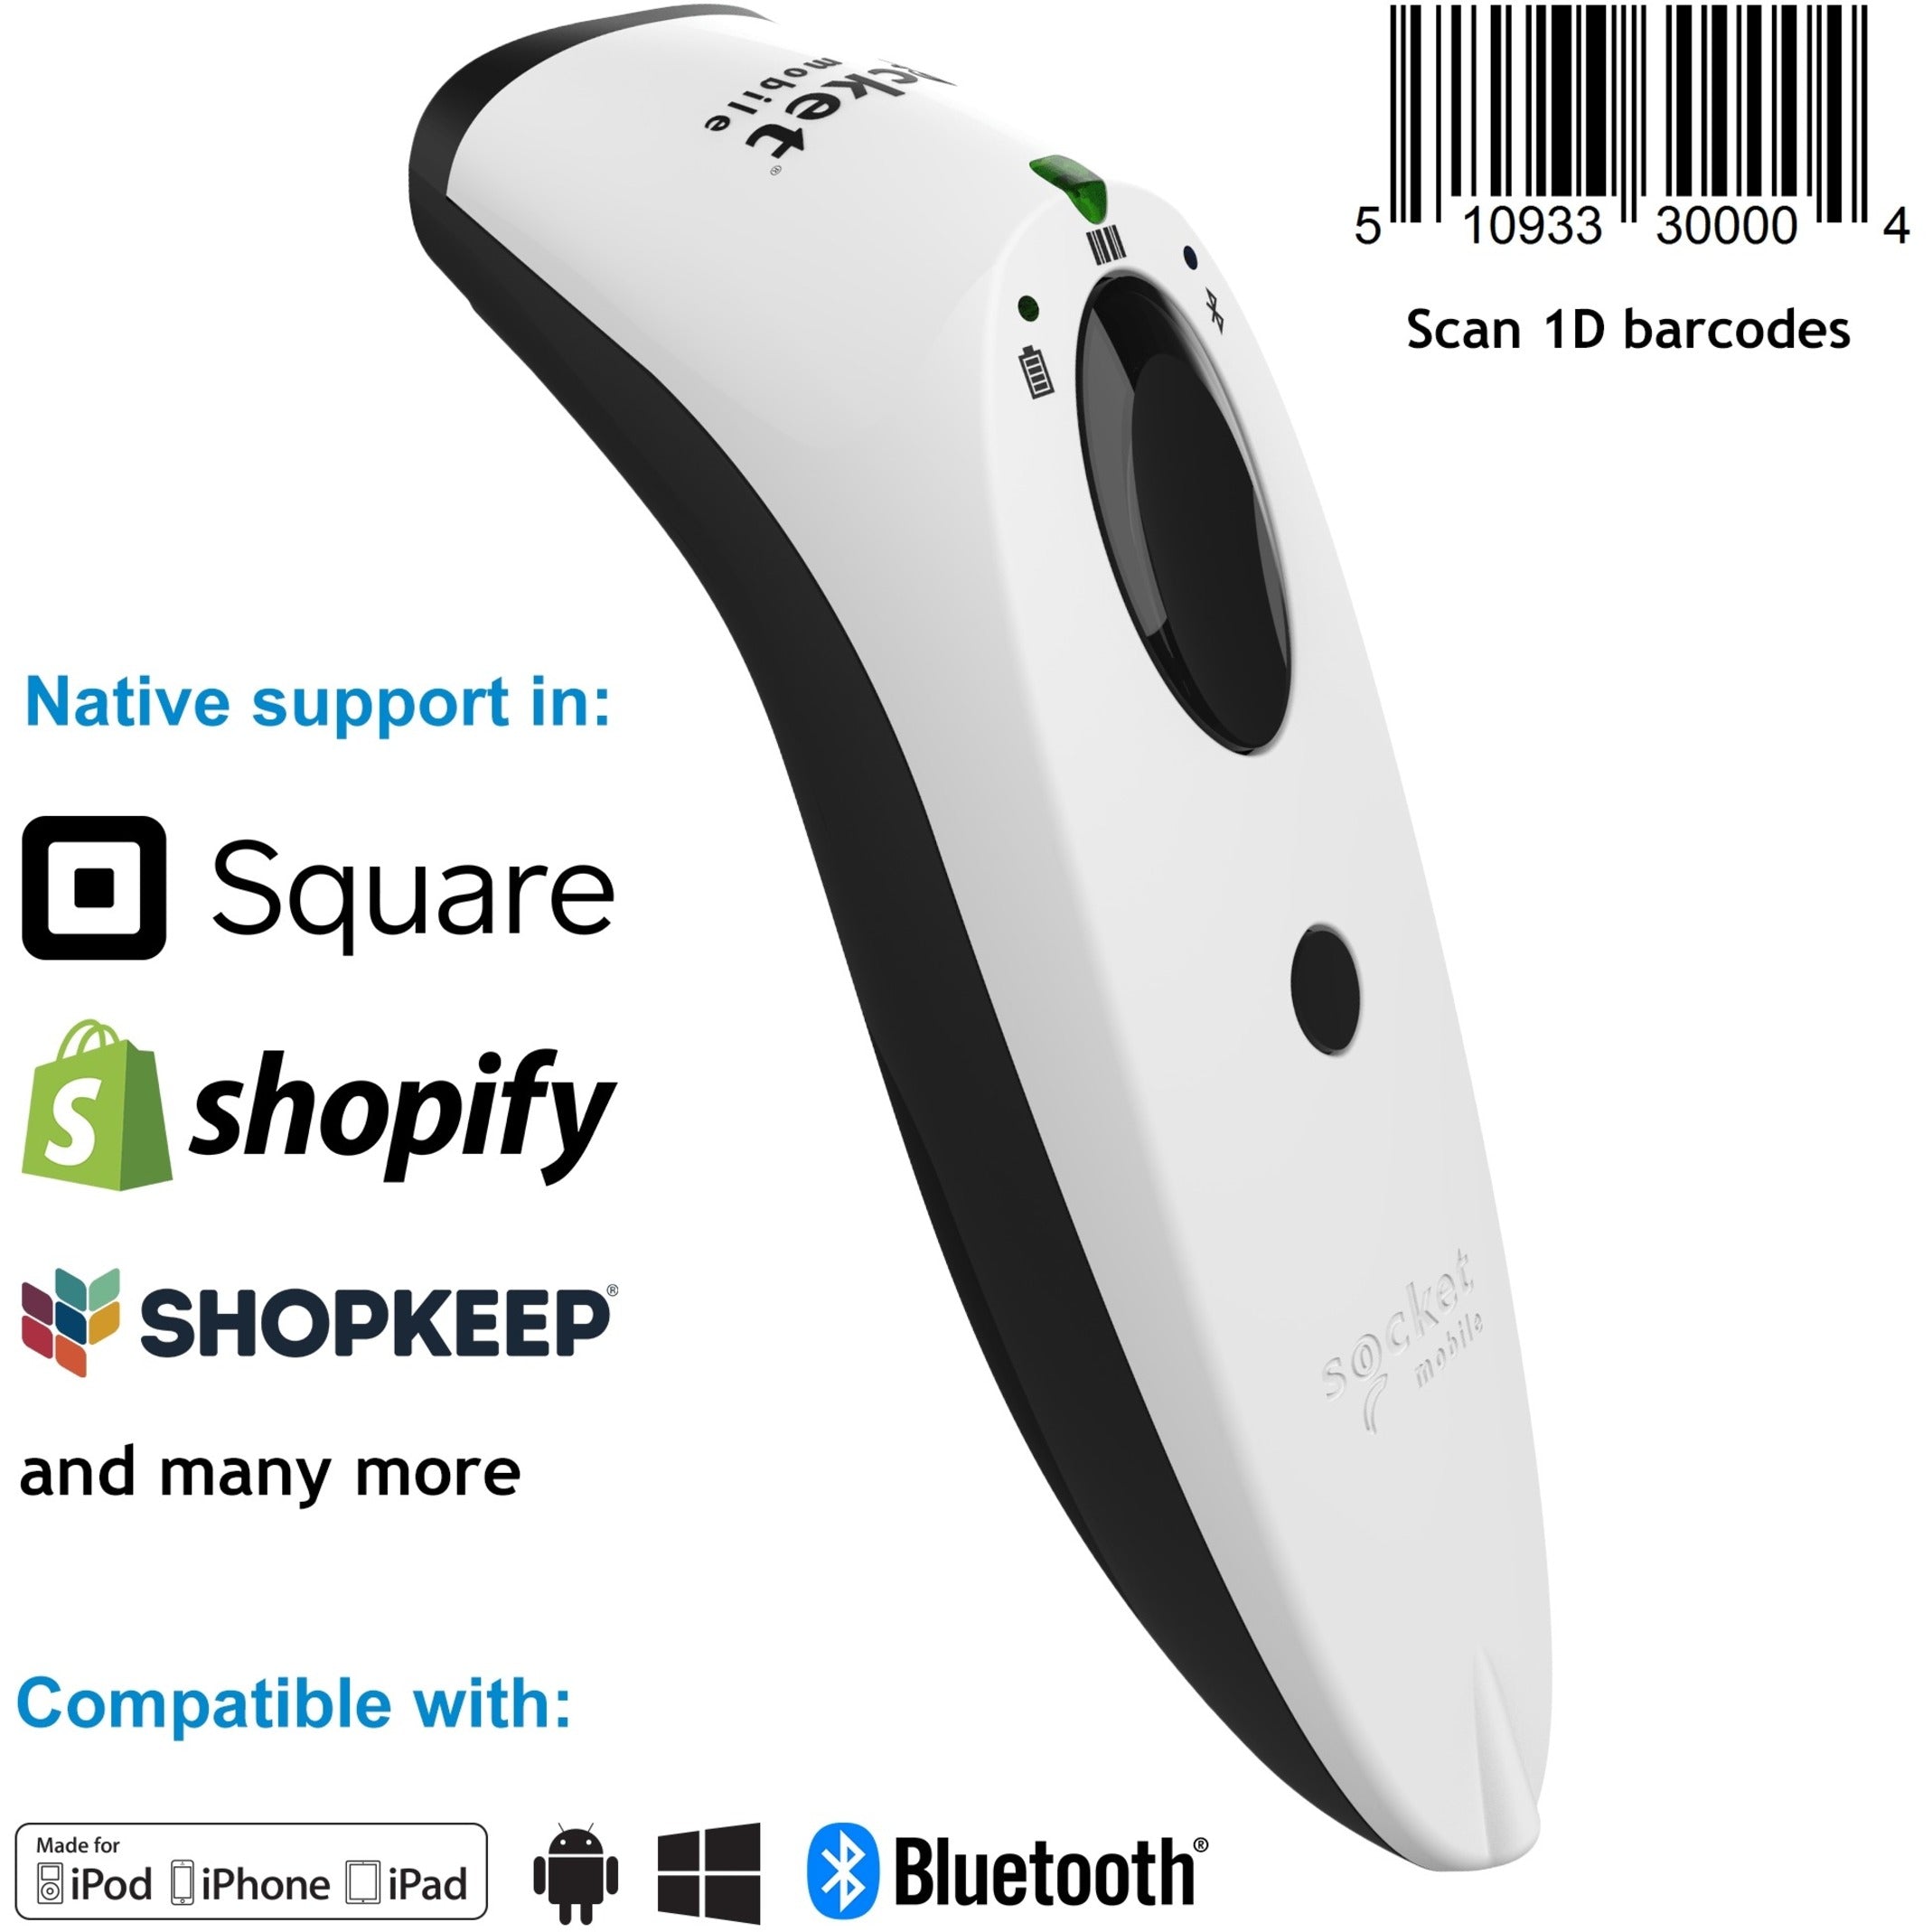 جهاز ماسح ضوئي للباركود بتقنية الليزر SocketScan S730 من سوكيت موبايل ، اللون الأبيض